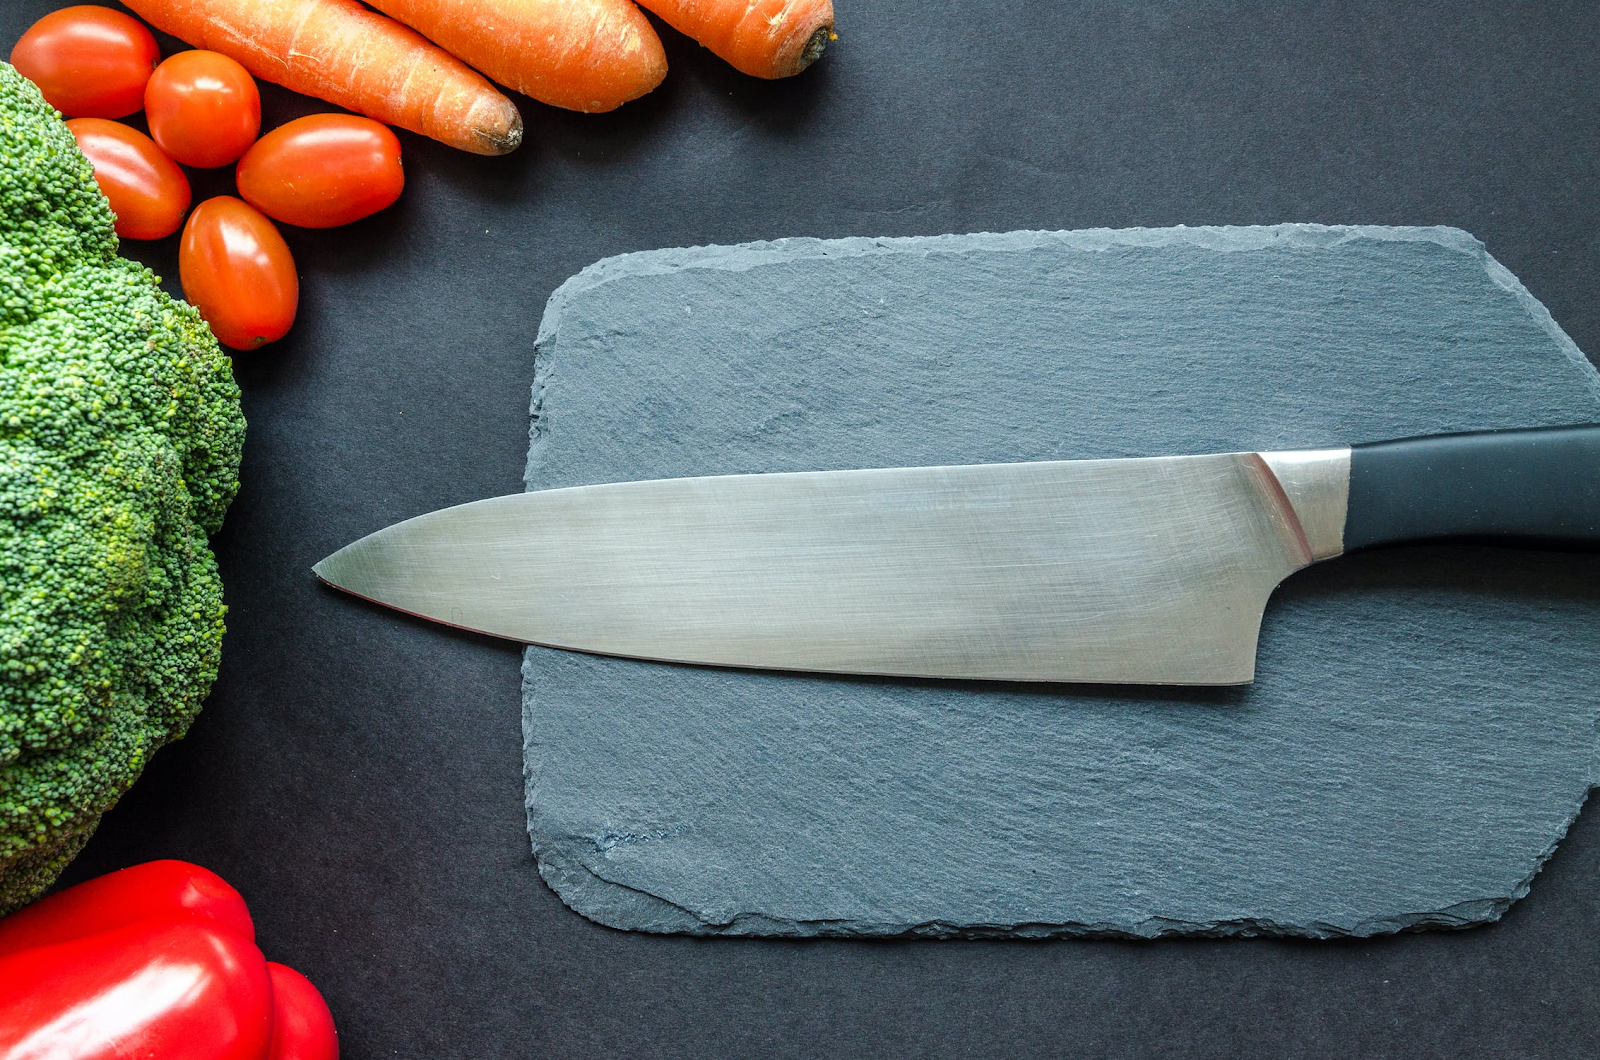 Chef's knife on slate